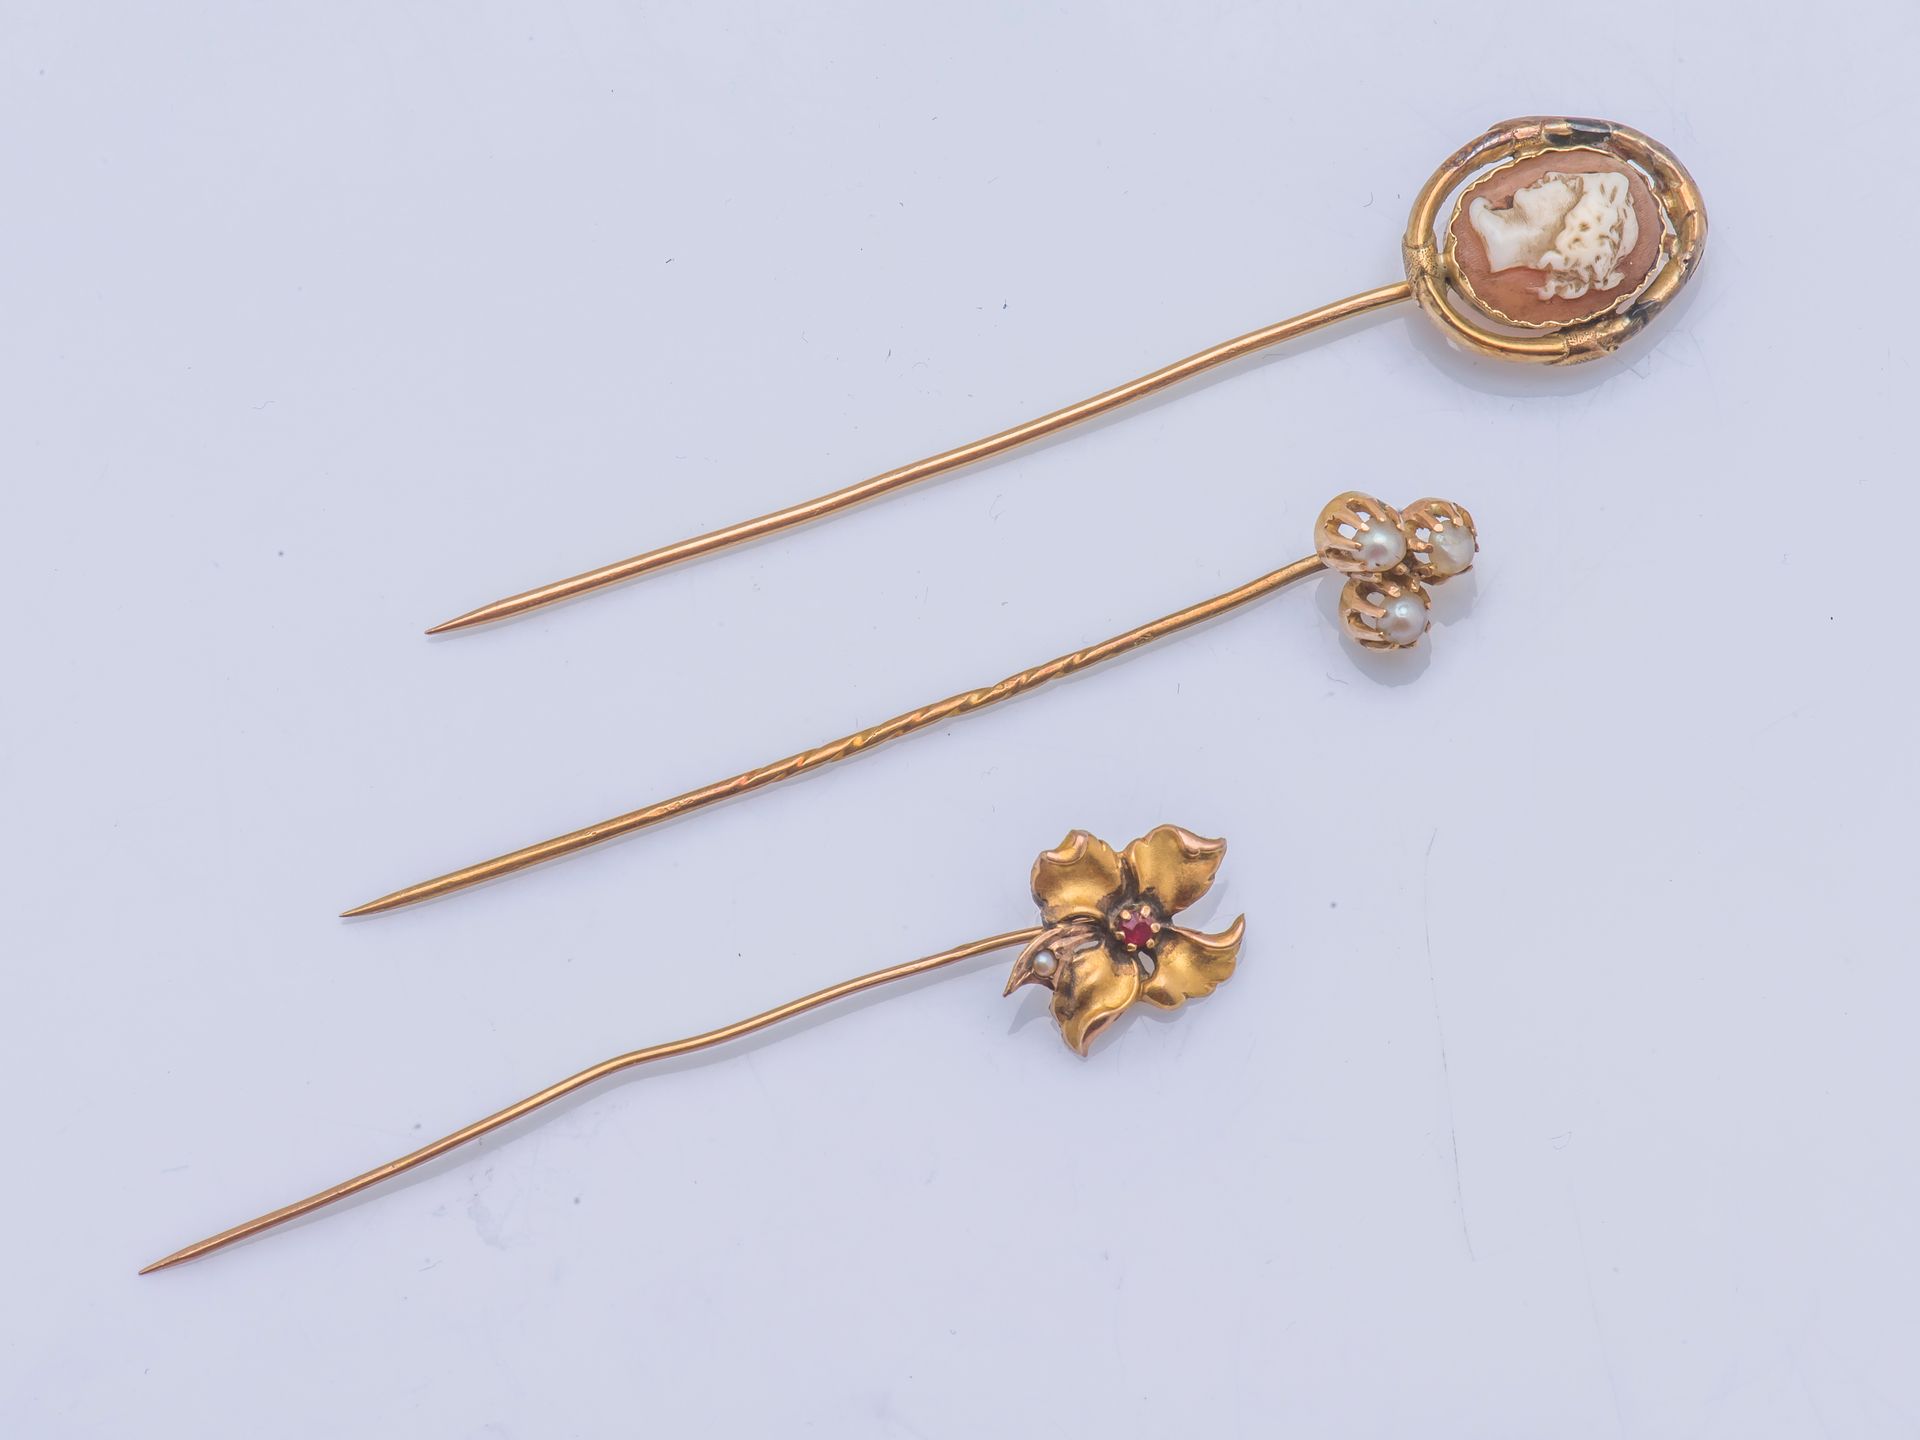 Null 一套三件18克拉（750千分之一）黄金领带夹，其中一件有一个贝壳浮雕，显示一个女性的轮廓，第二件有一朵嵌有小红宝石和一颗珍珠的镂空花，第三件有三颗小珍&hellip;